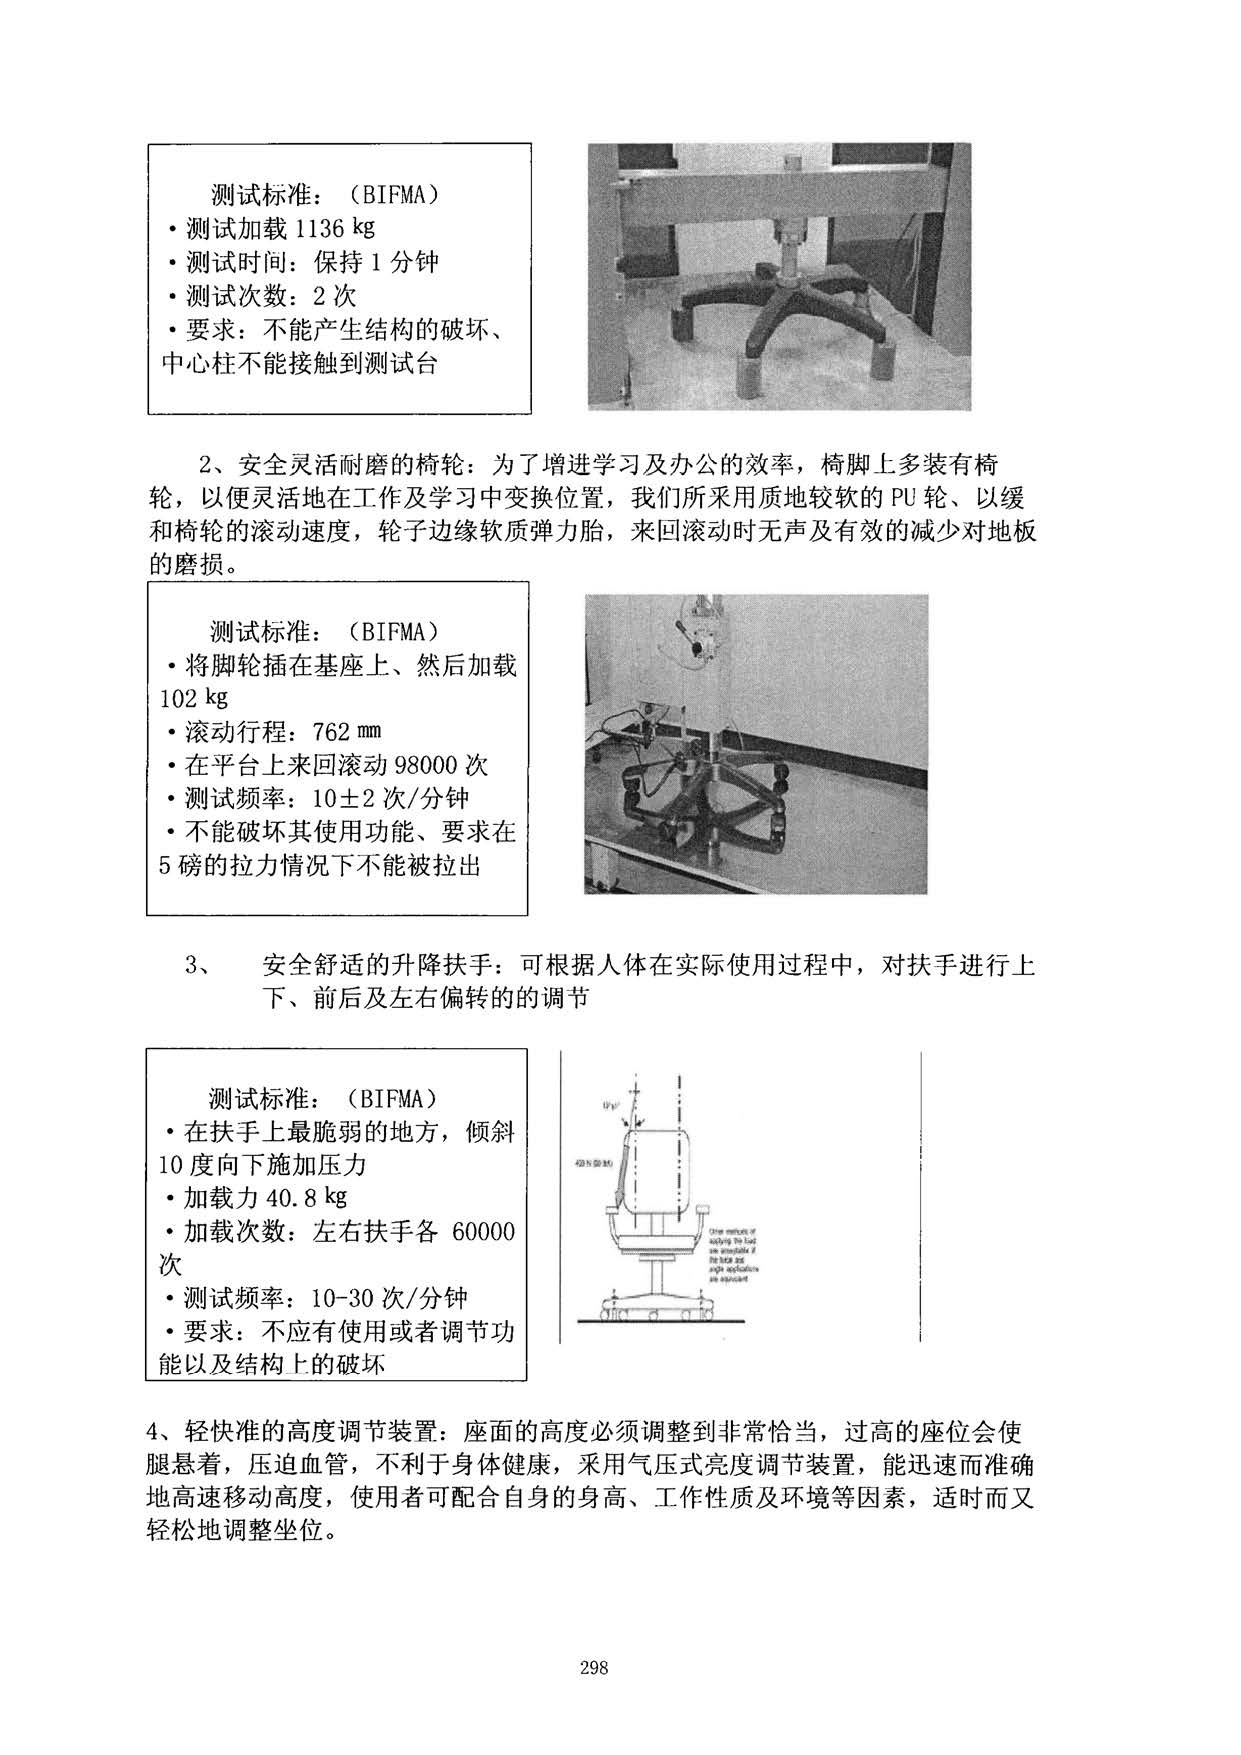 1.学生康乐磁椅研究与应用_方志财_页面_2